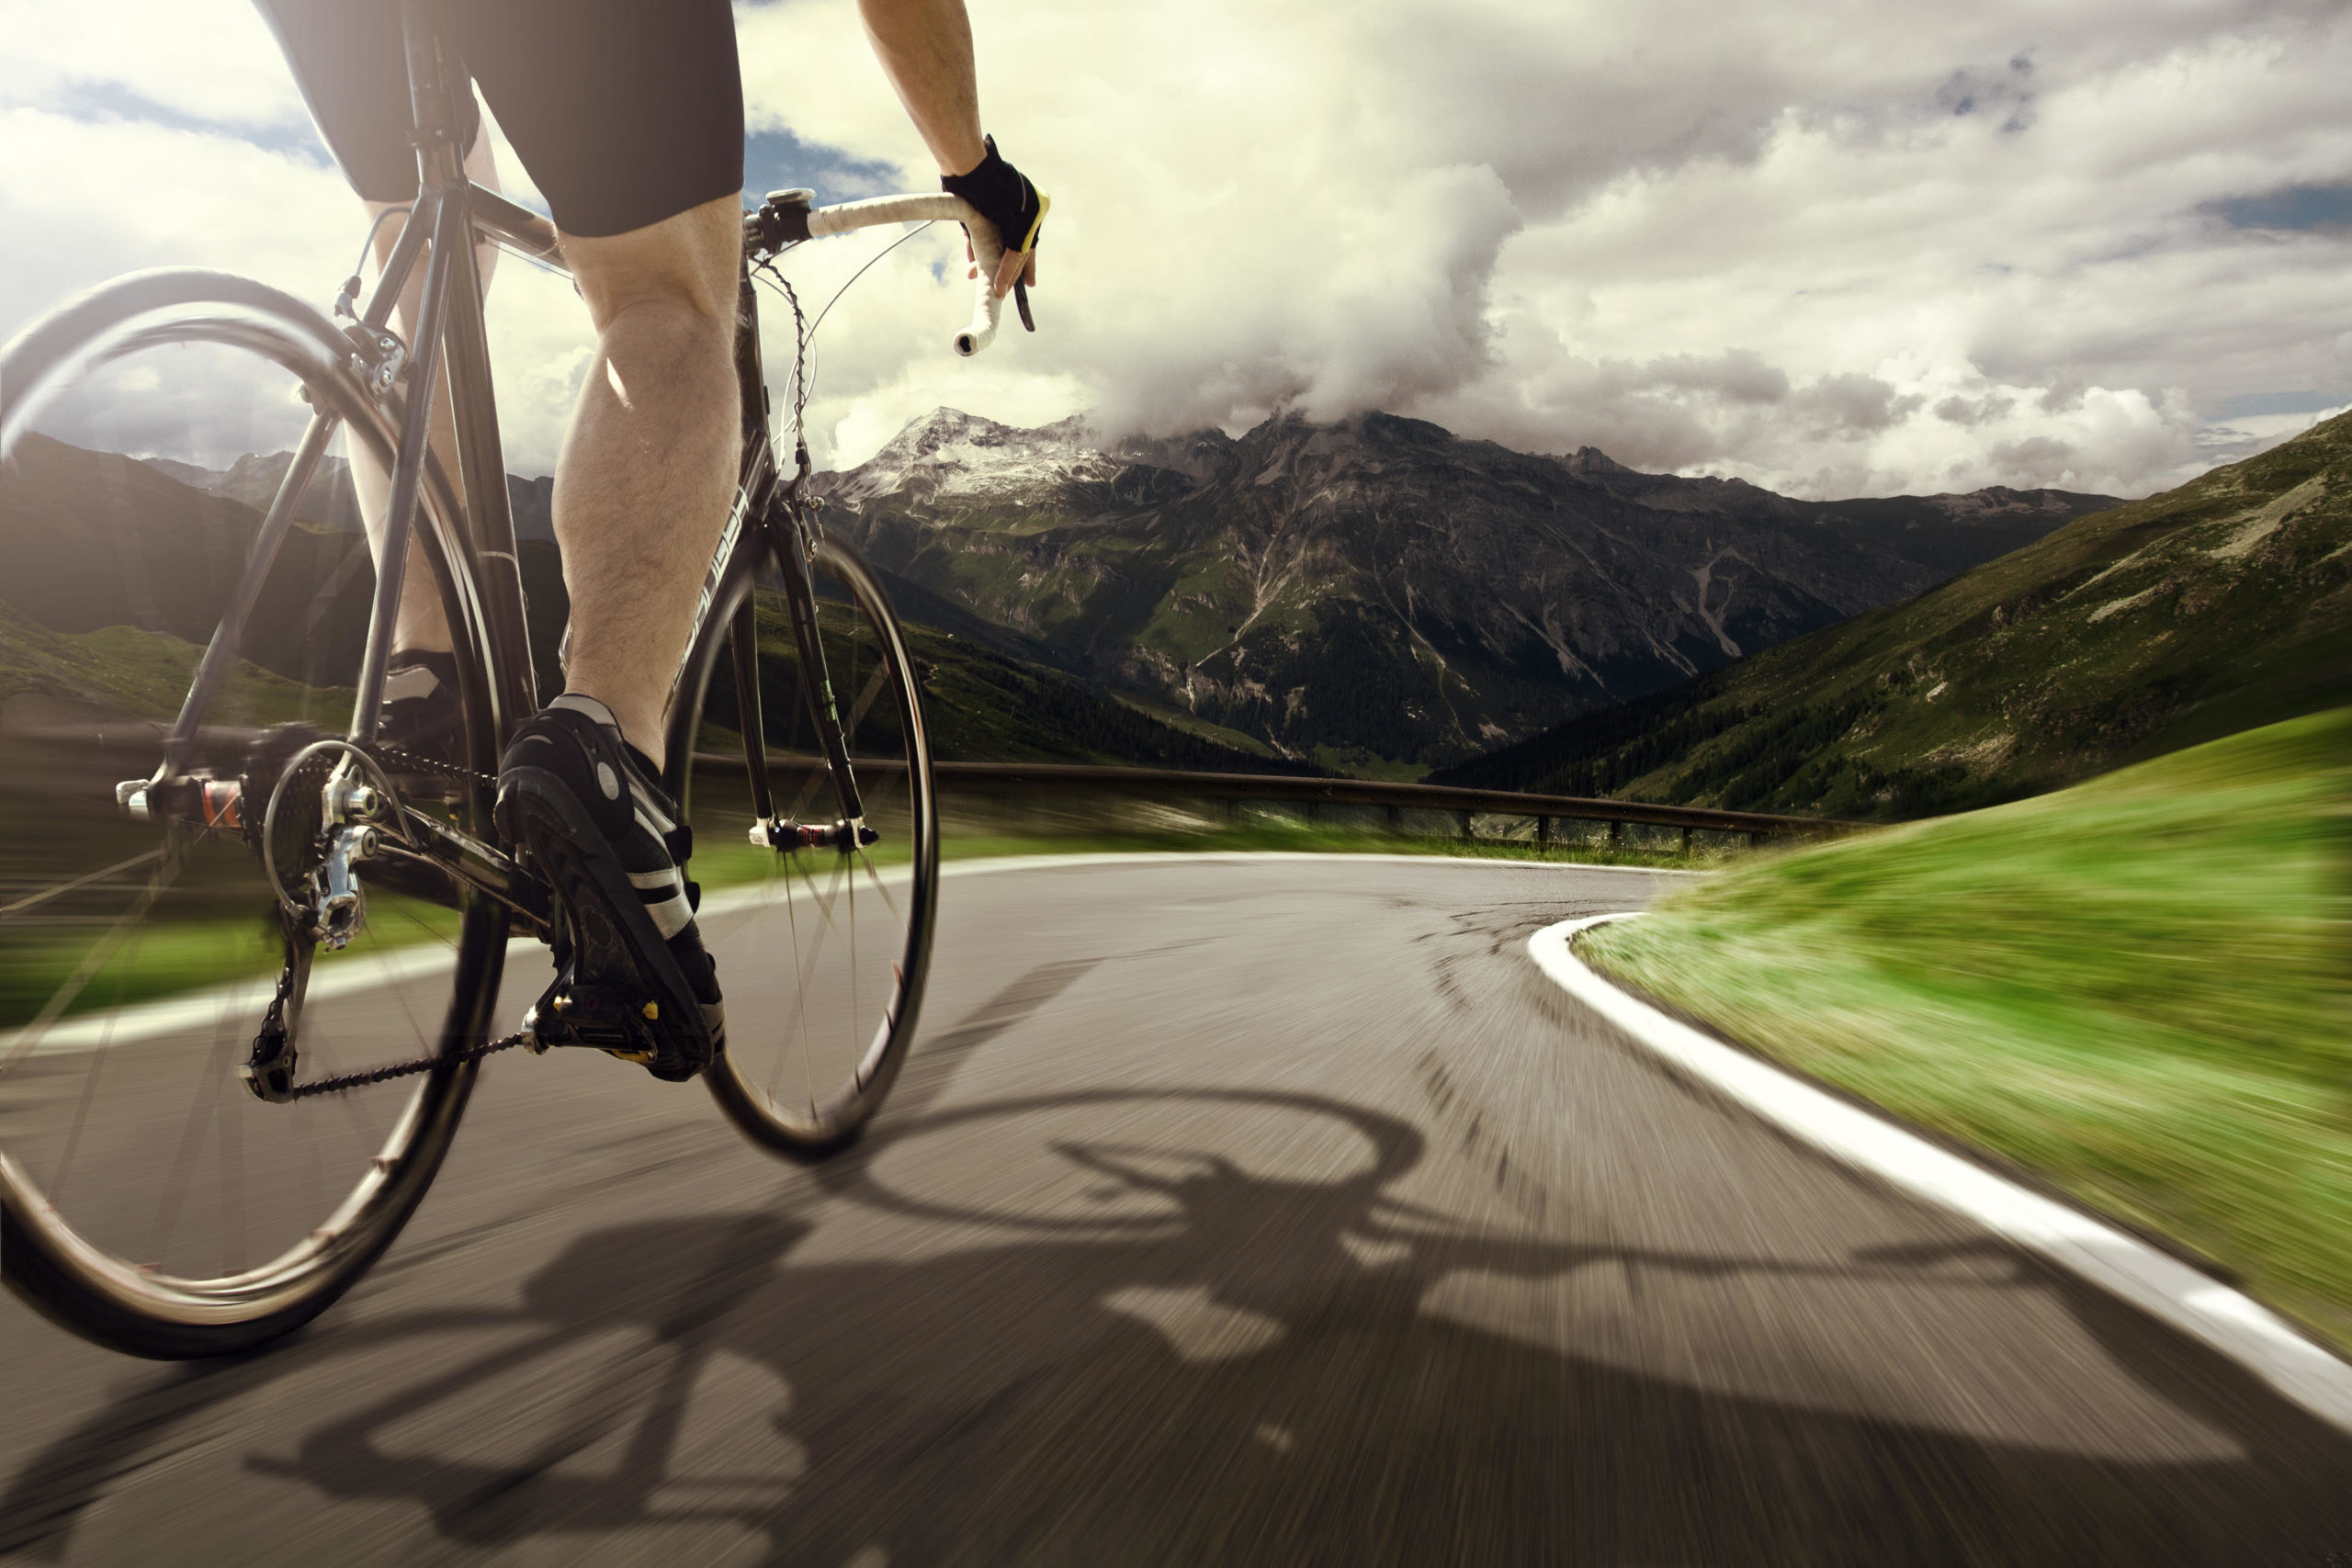 Velo seco brindis Ropa y Equipación de Ciclismo Personalizada | El Tío del Mazo